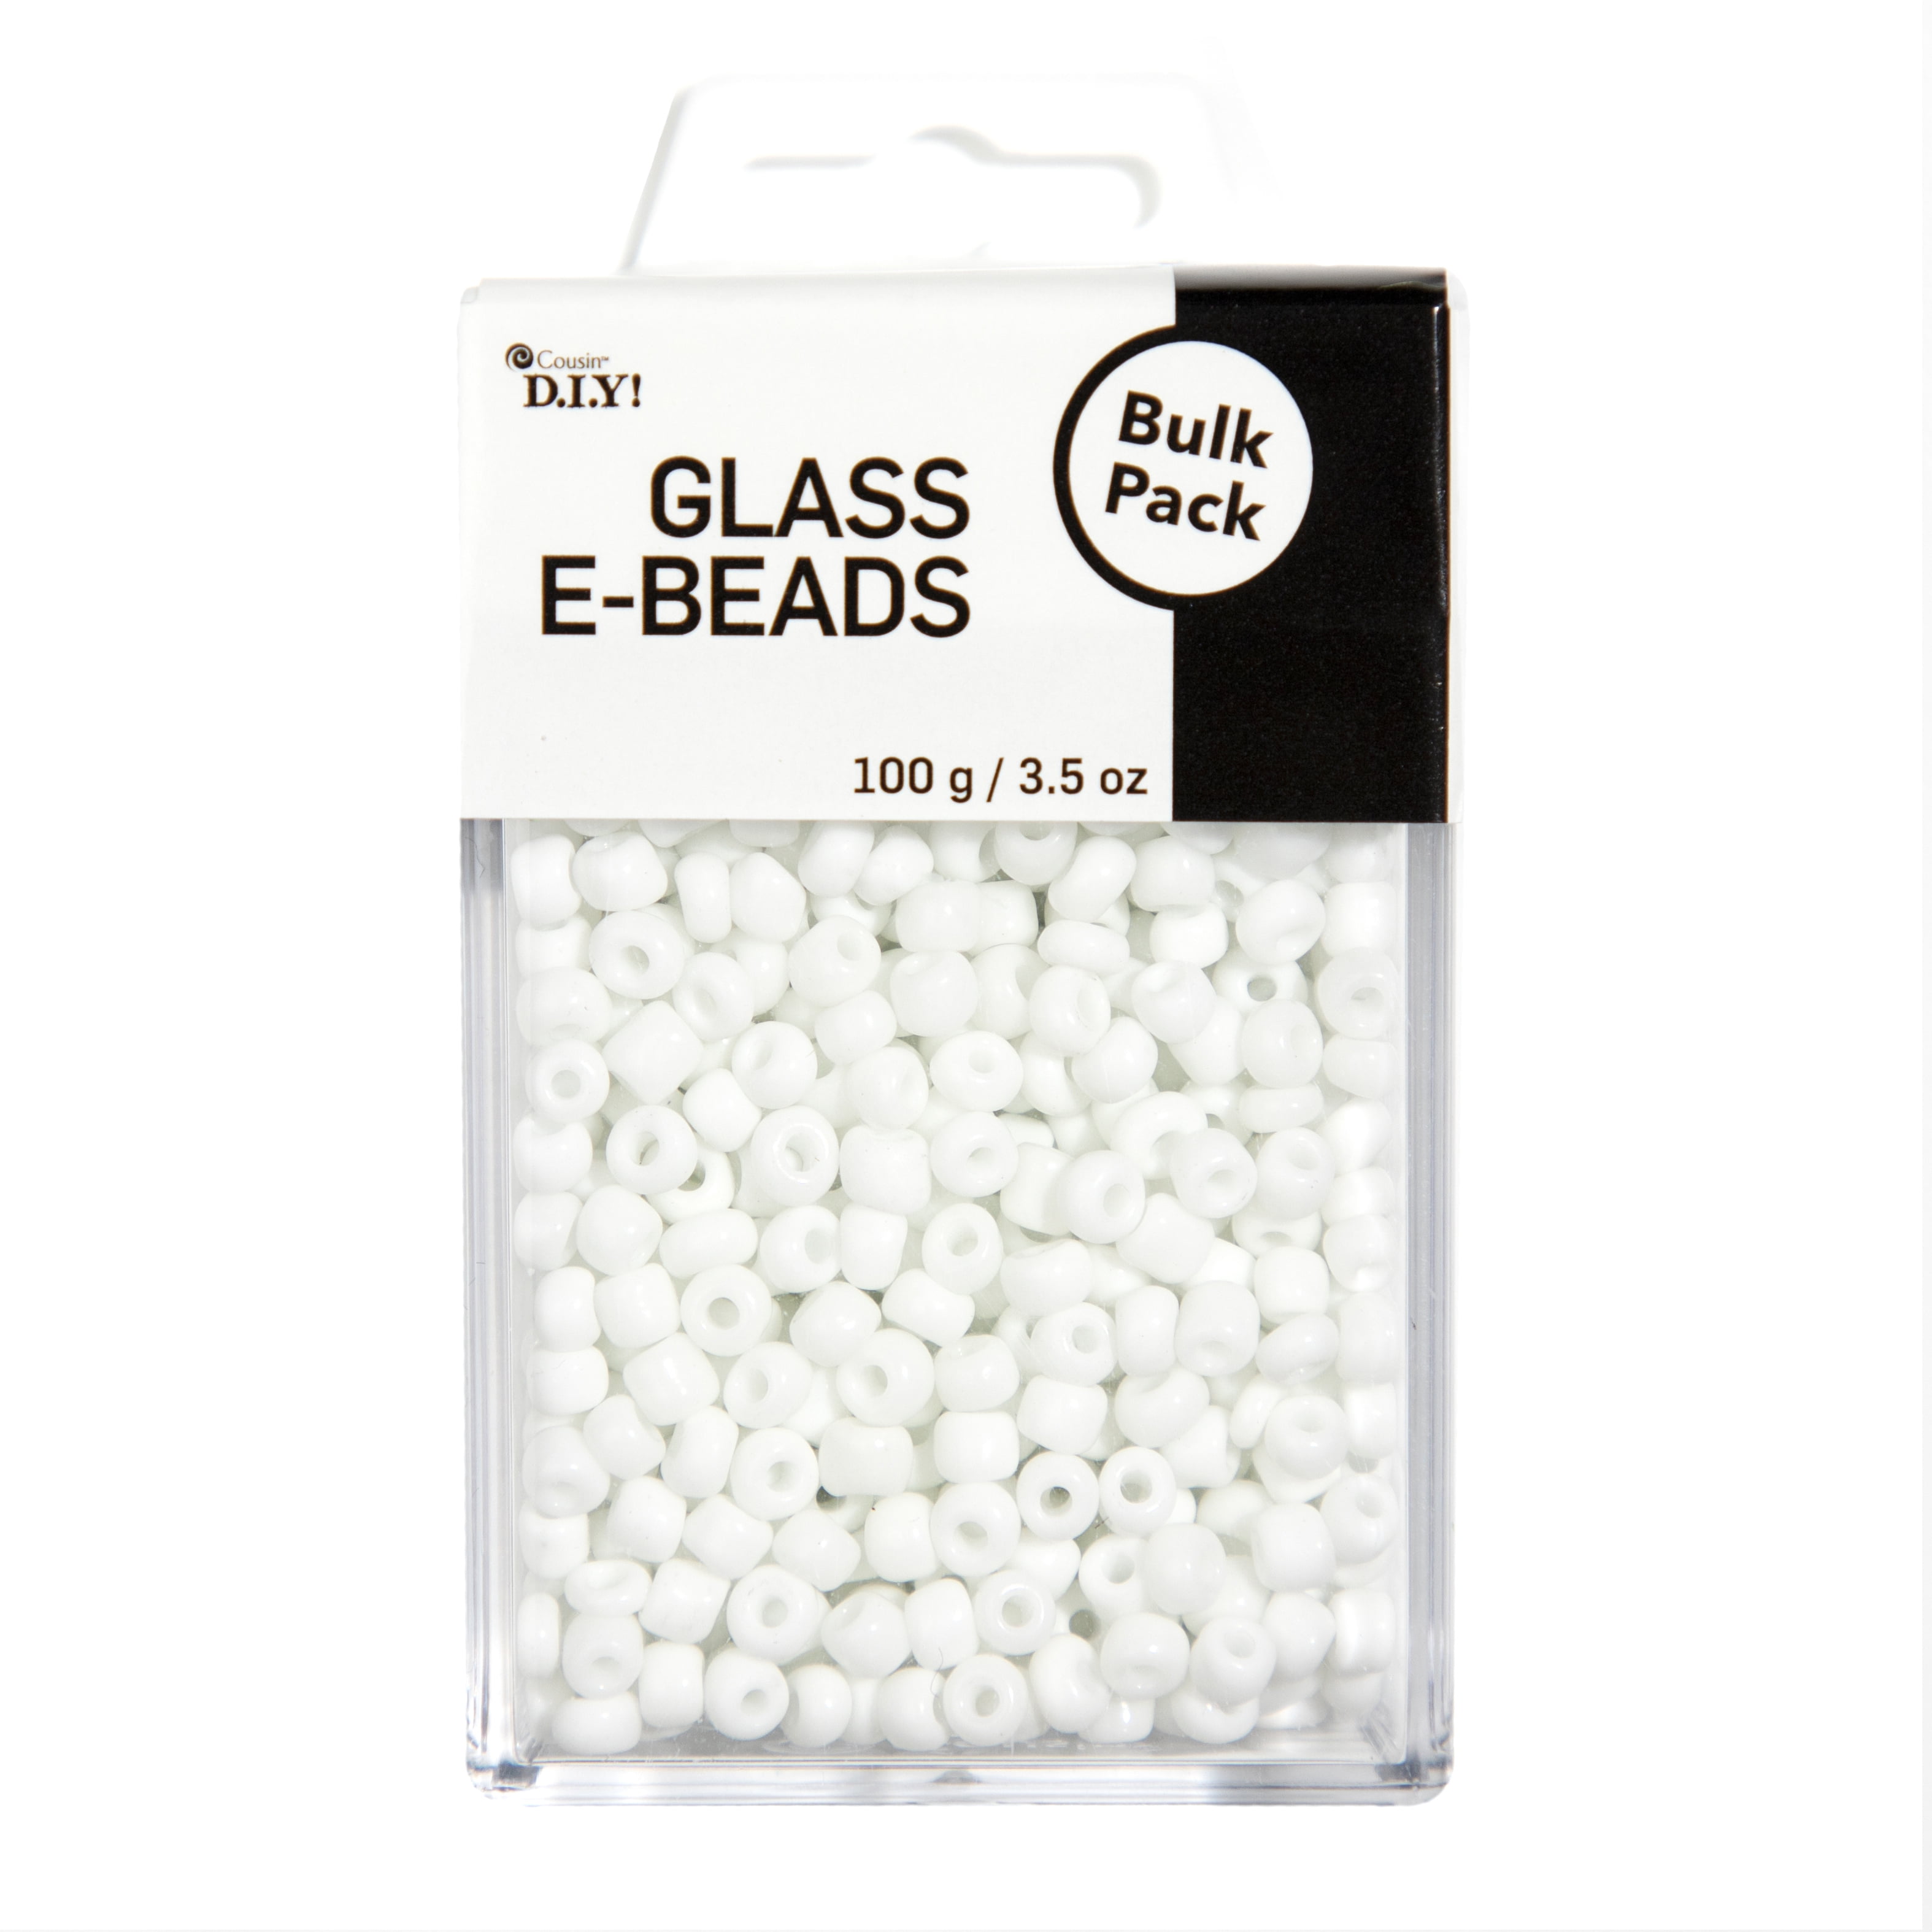 Cousin DIY Glass Bead Assortment - Each